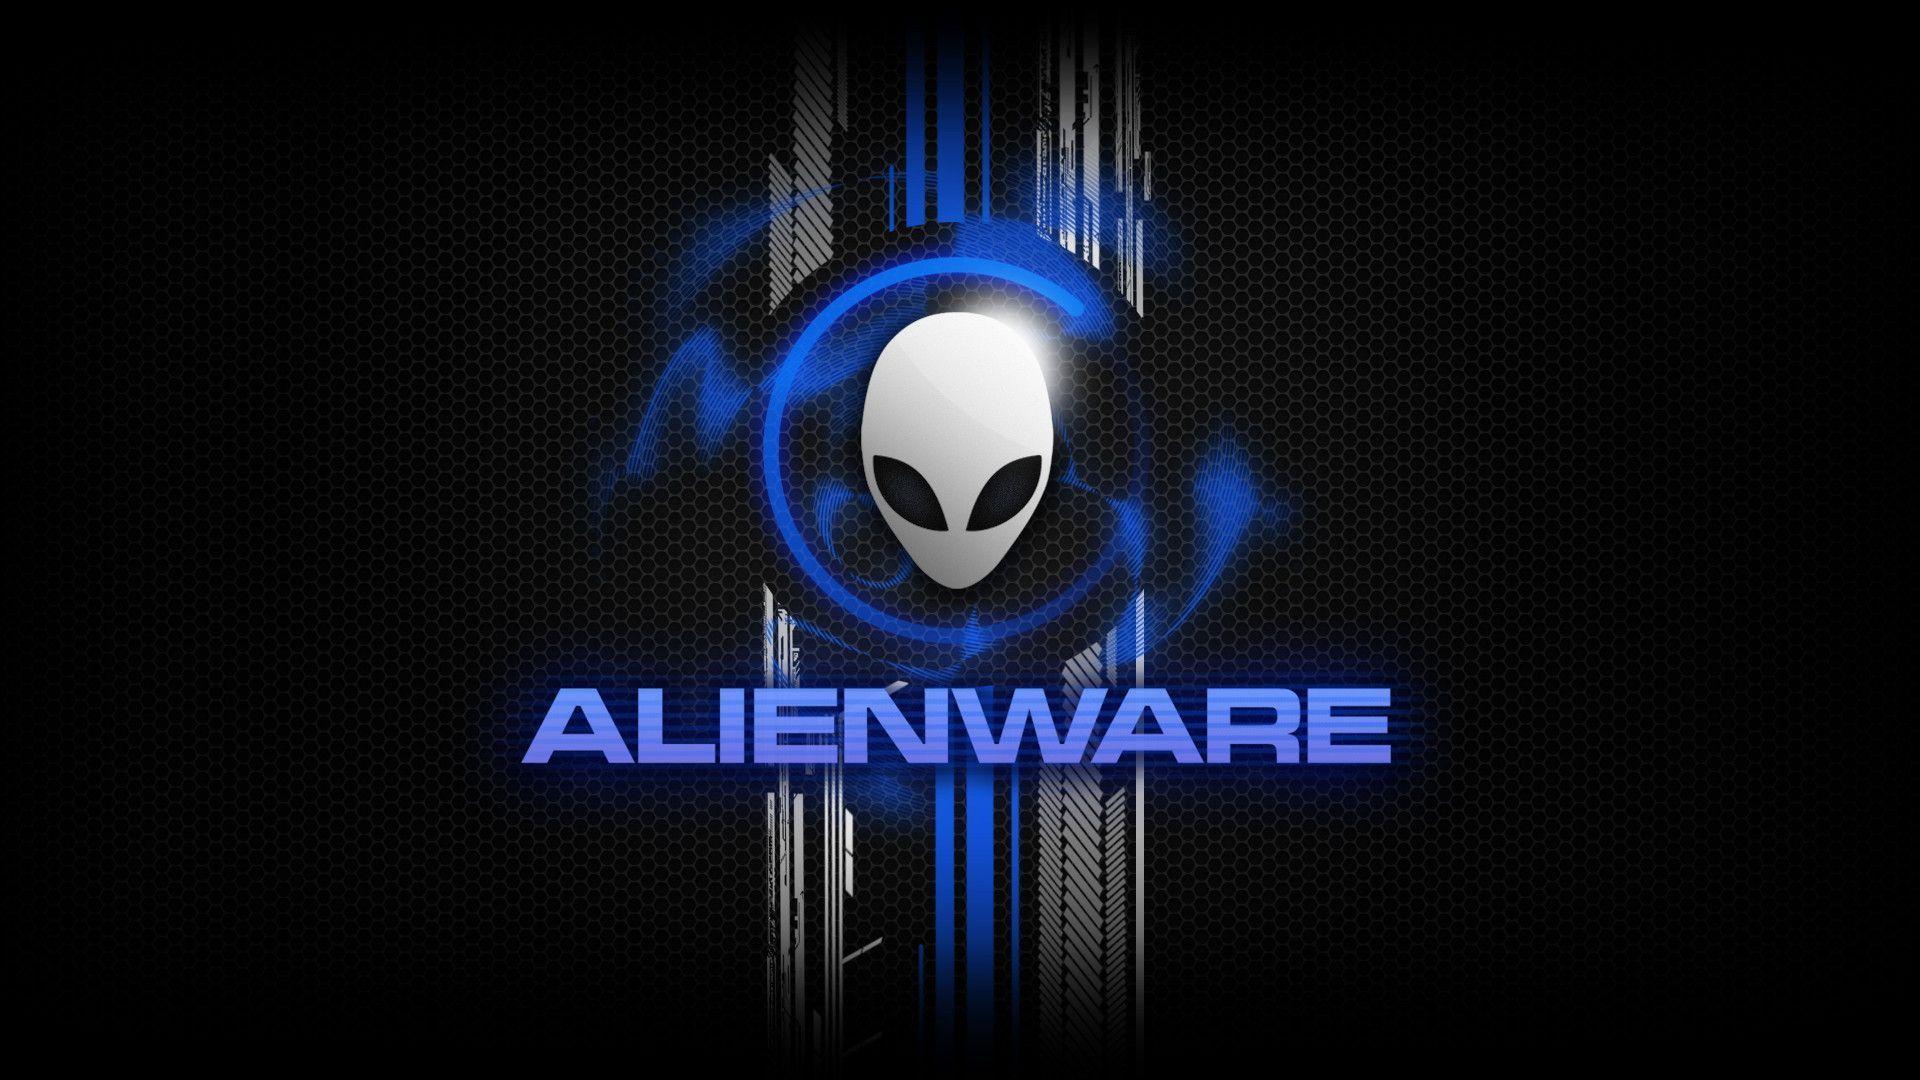 HD Alienware Wallpapers - Wallpaper Cave